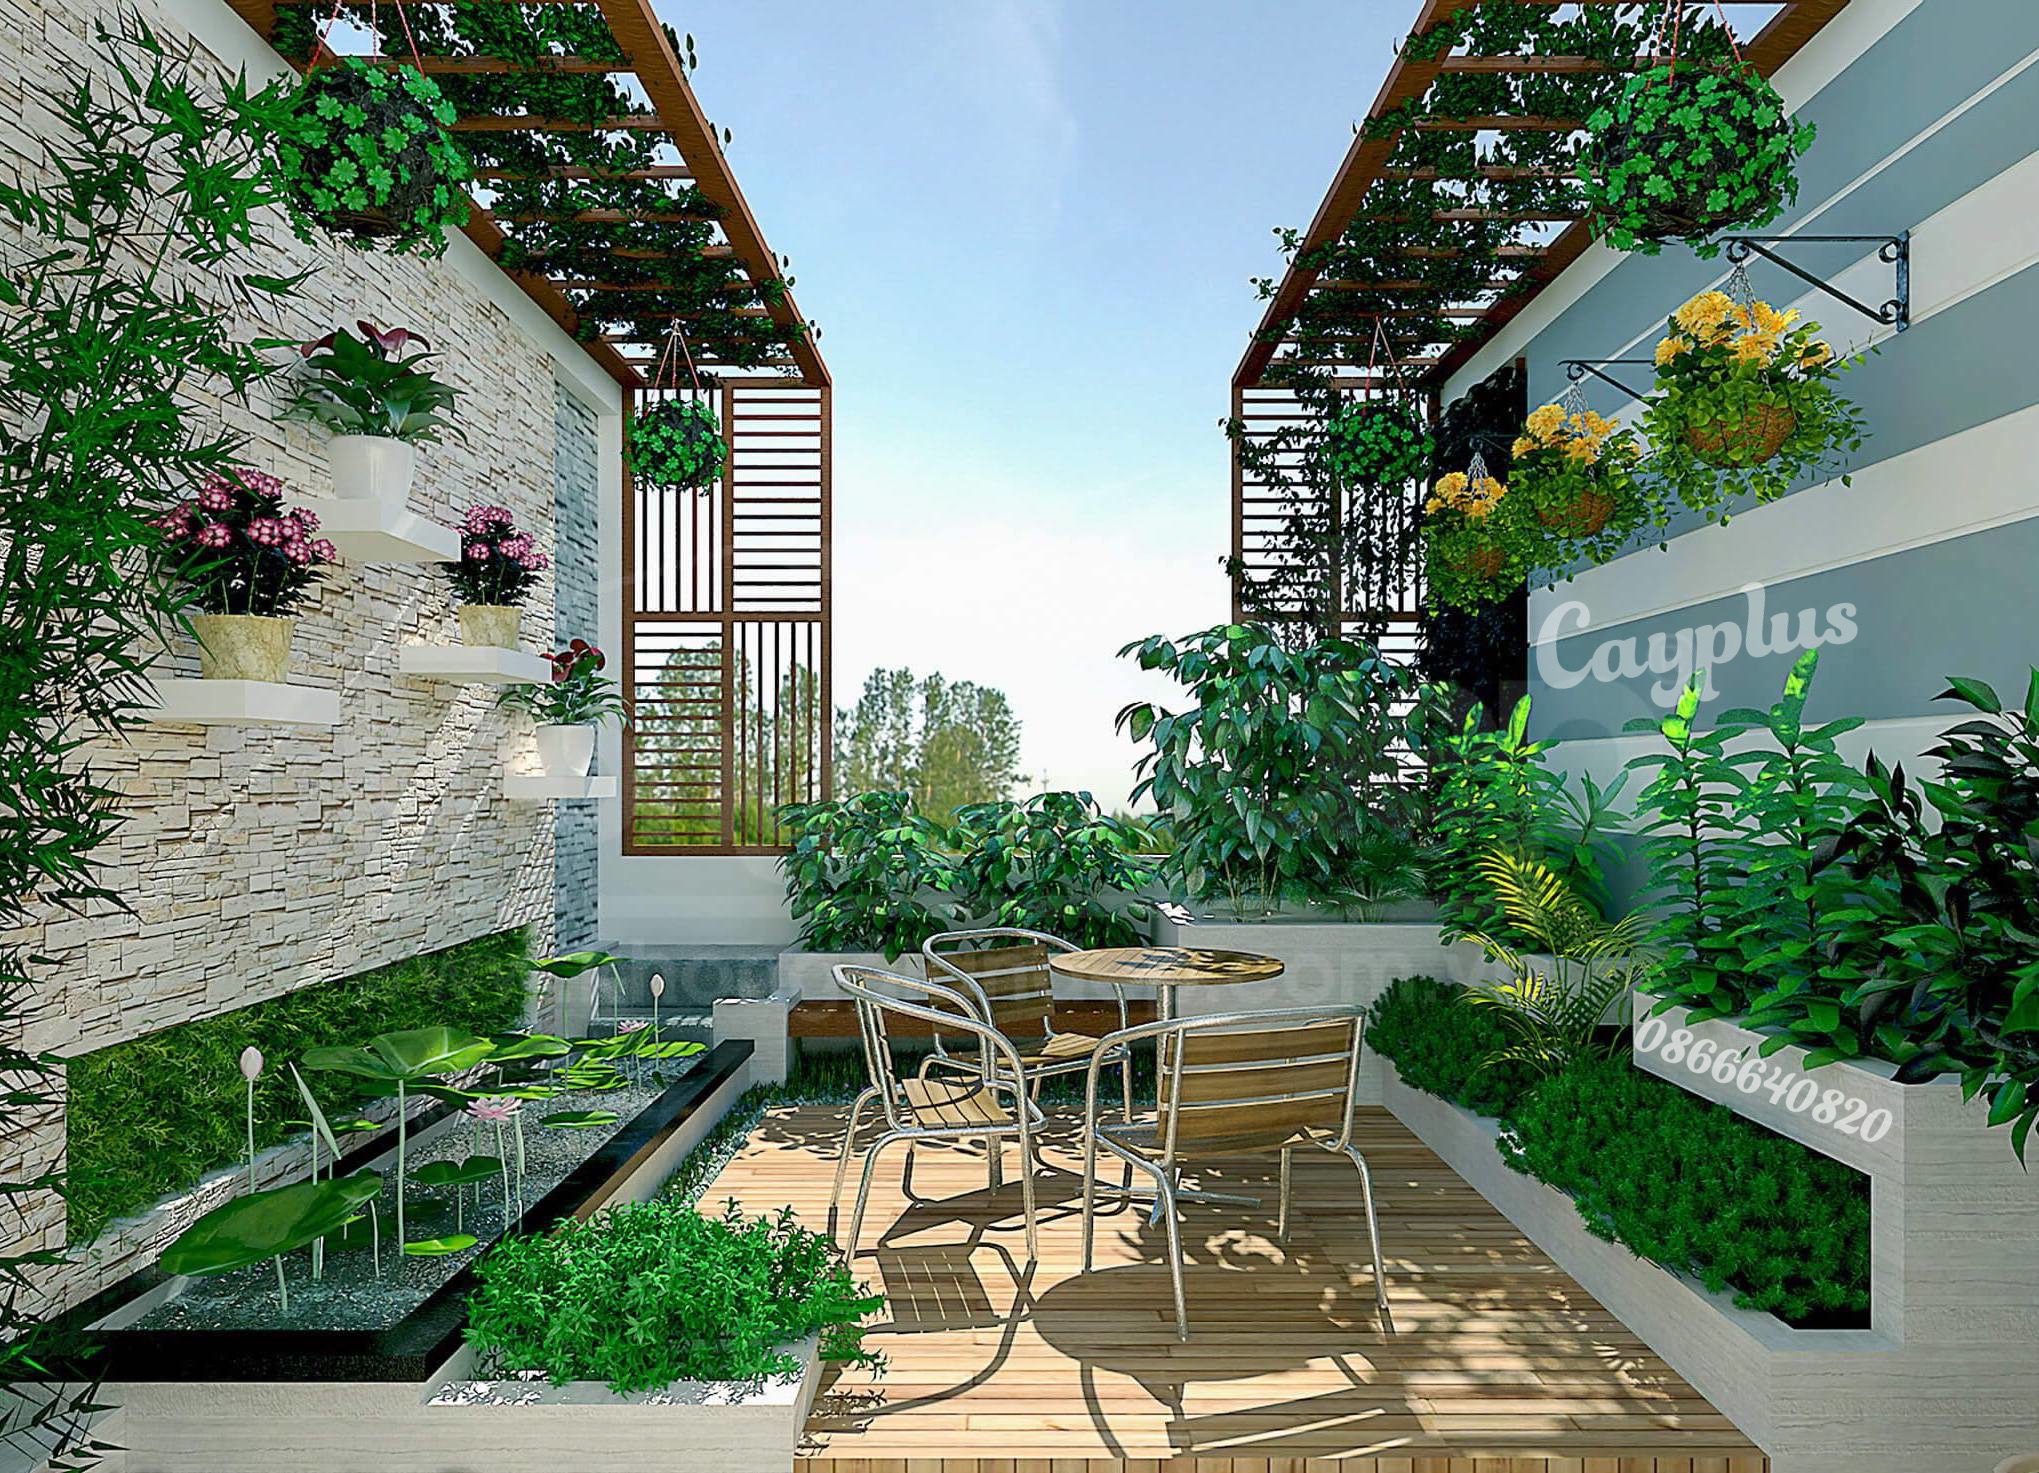 Vườn trên mái hiện đại vào năm 2024 mang lại một trải nghiệm sống độc đáo và đầy ấn tượng. Thiết kế vườn nhỏ gọn, đa dạng với các cây xanh và hoa cải thảo đầy màu sắc trên mái nhà sẽ là một điểm nhấn độc đáo cho ngôi nhà bạn. Vườn trên mái còn mang lại không gian thư giãn và tận hưởng cảnh quan tuyệt đẹp.